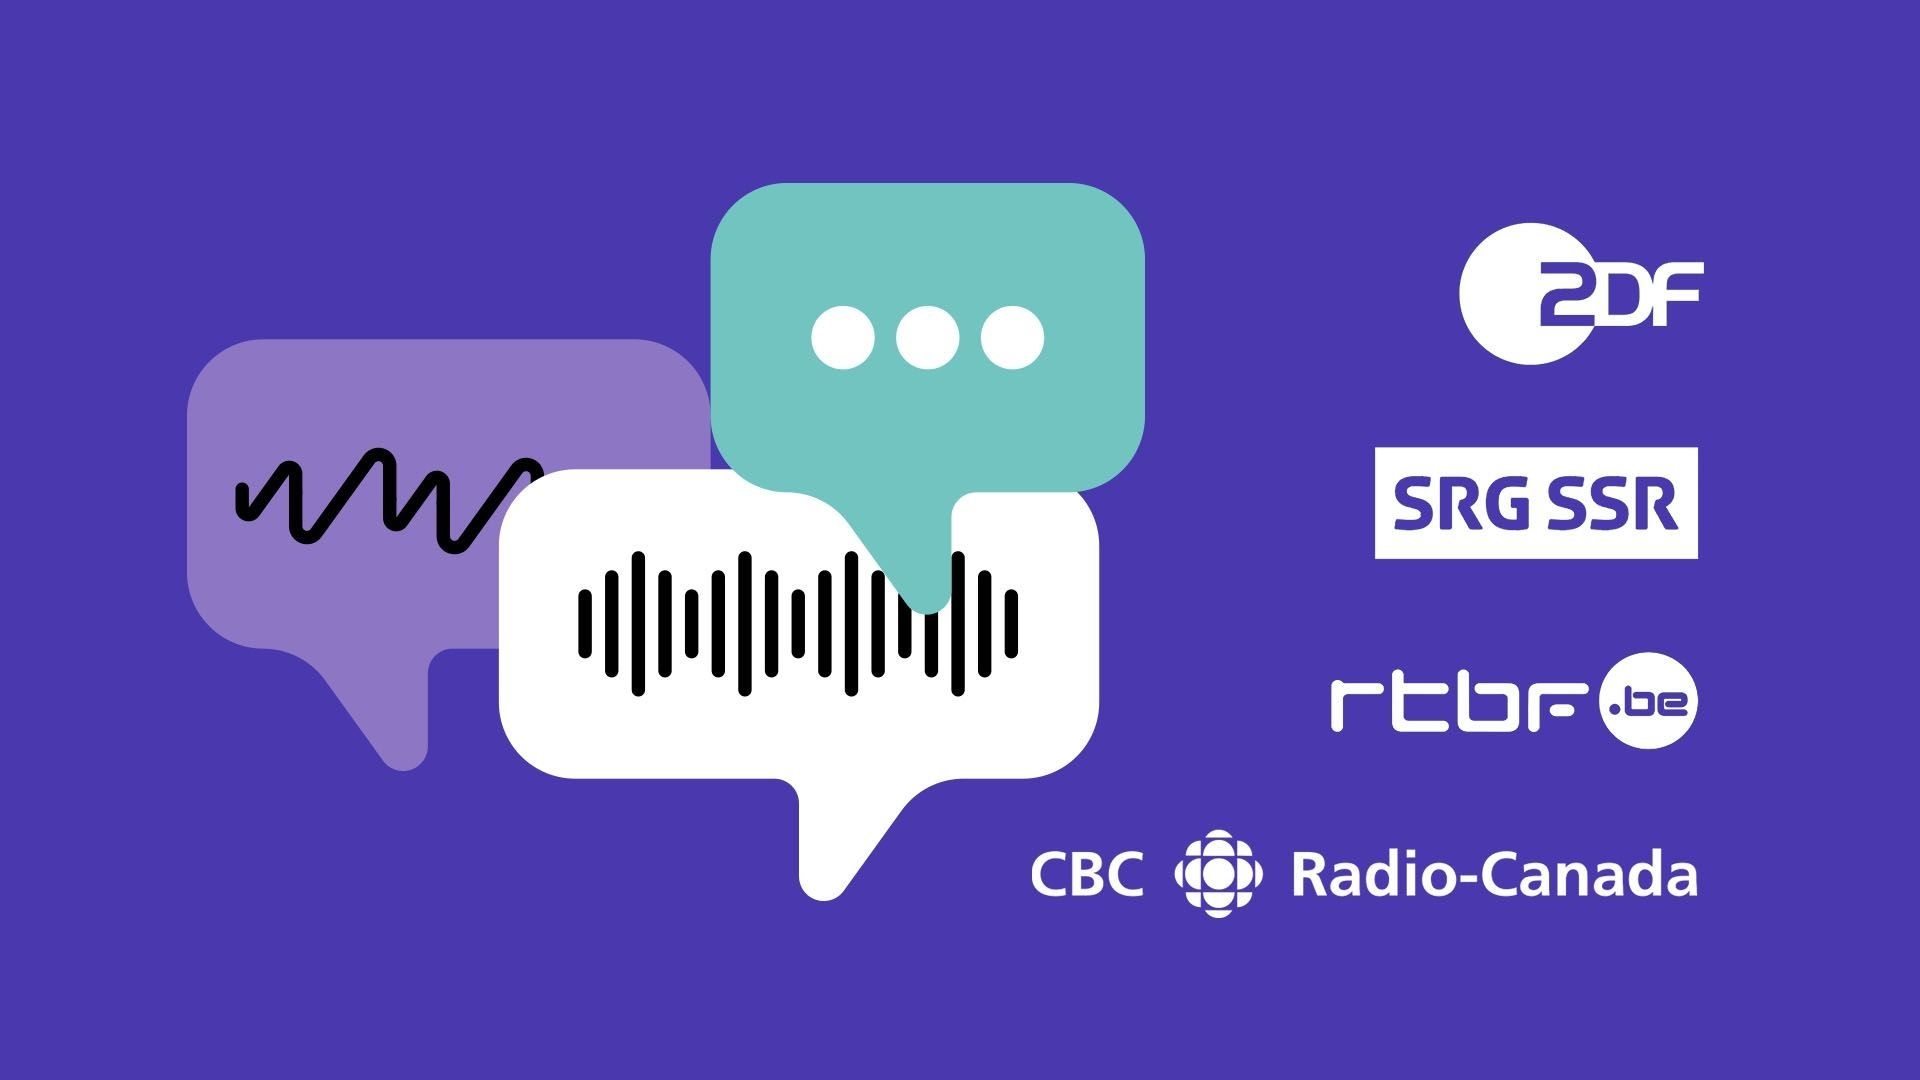 Pour cette initiative, la RTBF s’est associée à CBC/Radio-Canada, la SRG SSR (Suisse) et la ZDF
(Allemagne).